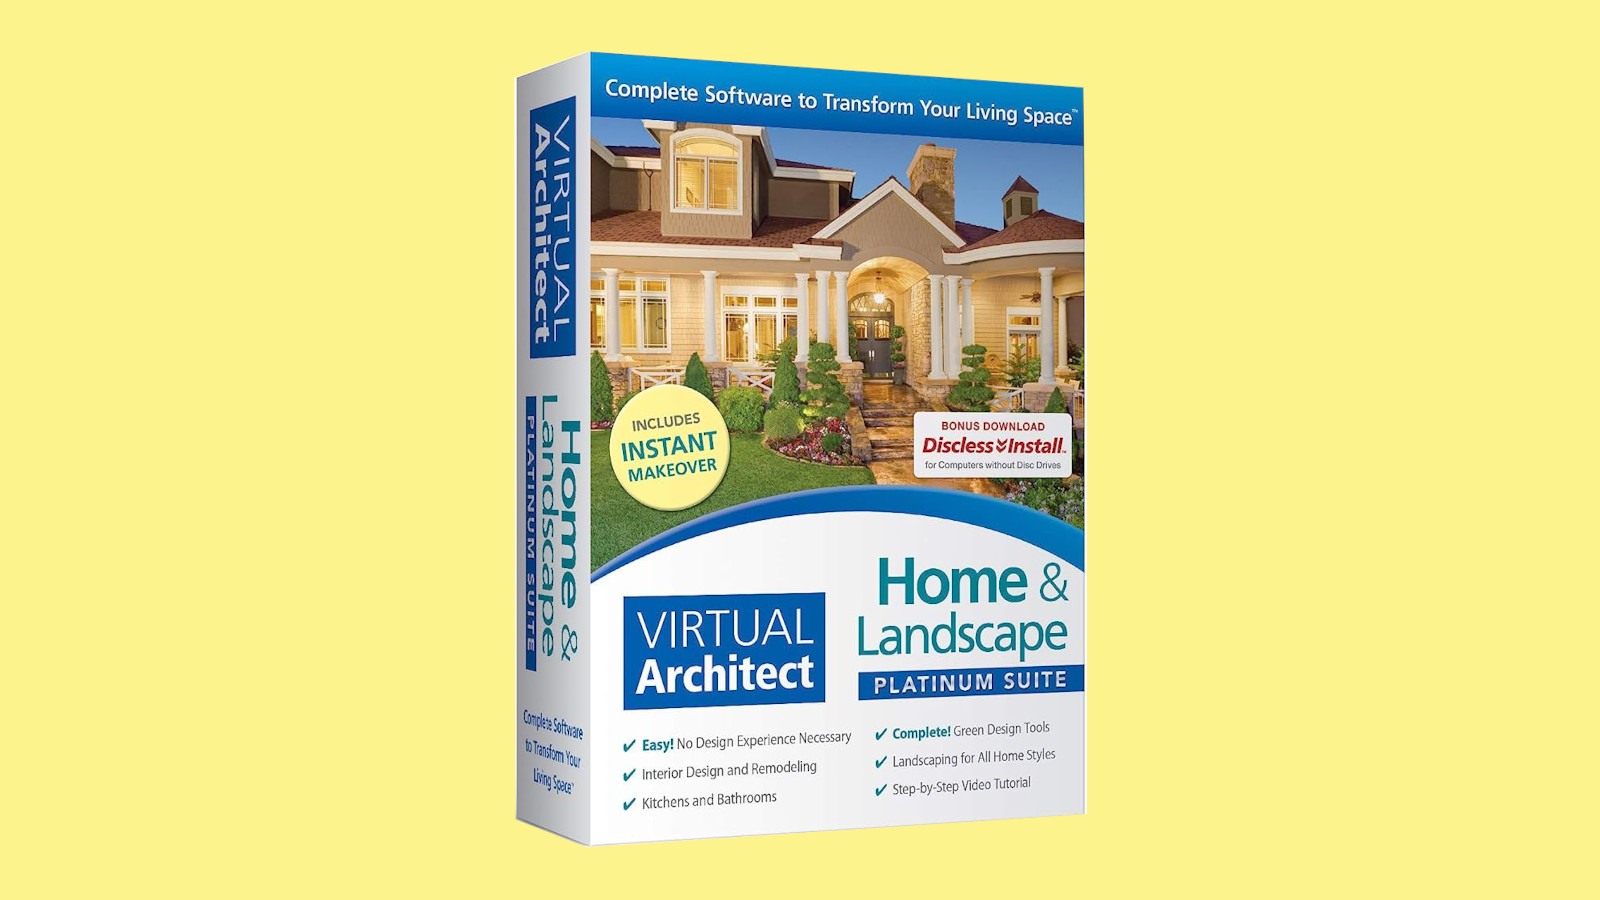 Virtual Architect Home & Landscape Platinum Suite CD Key